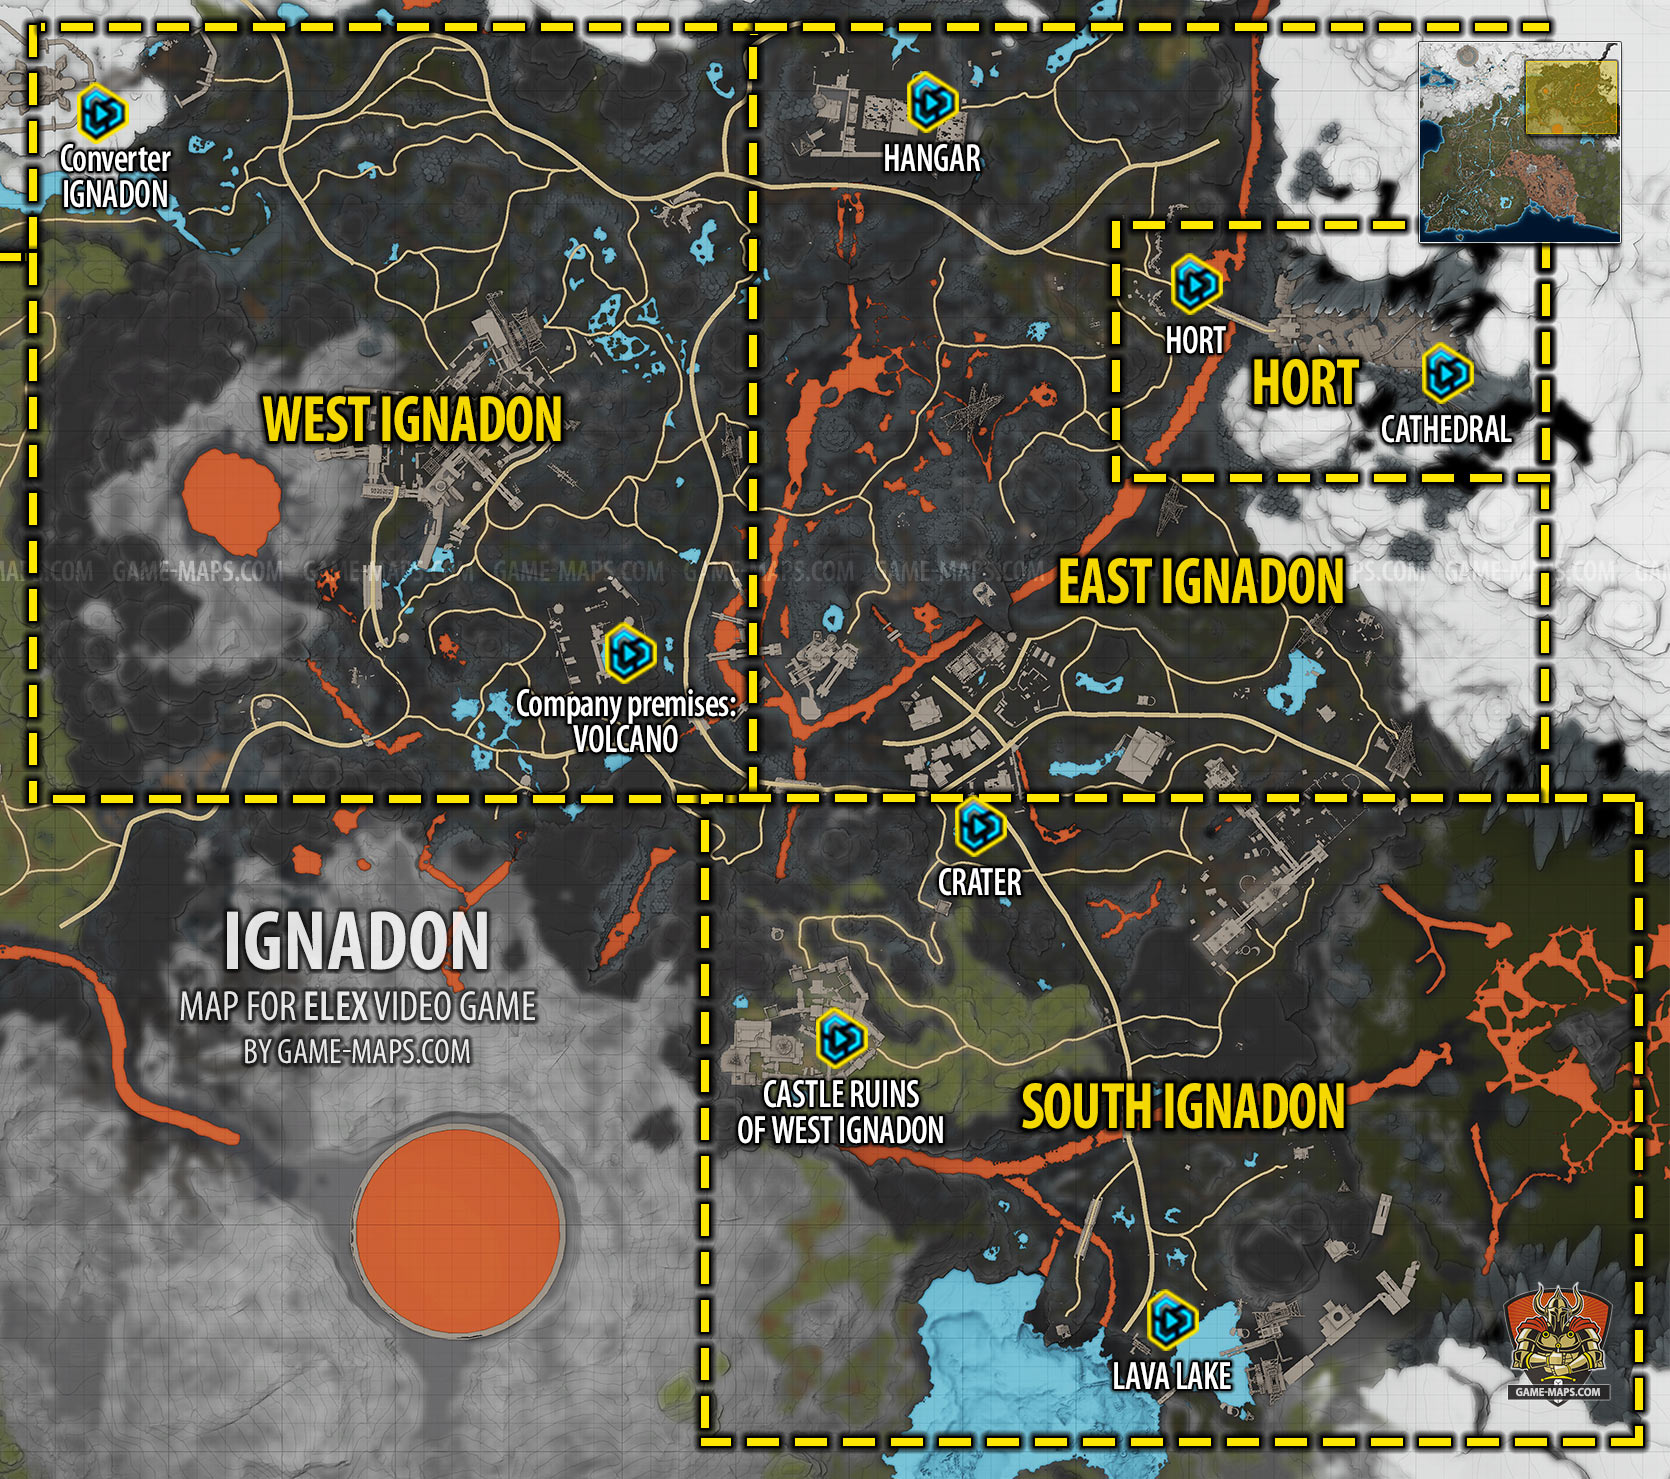 Map of Ignadon Region for ELEX